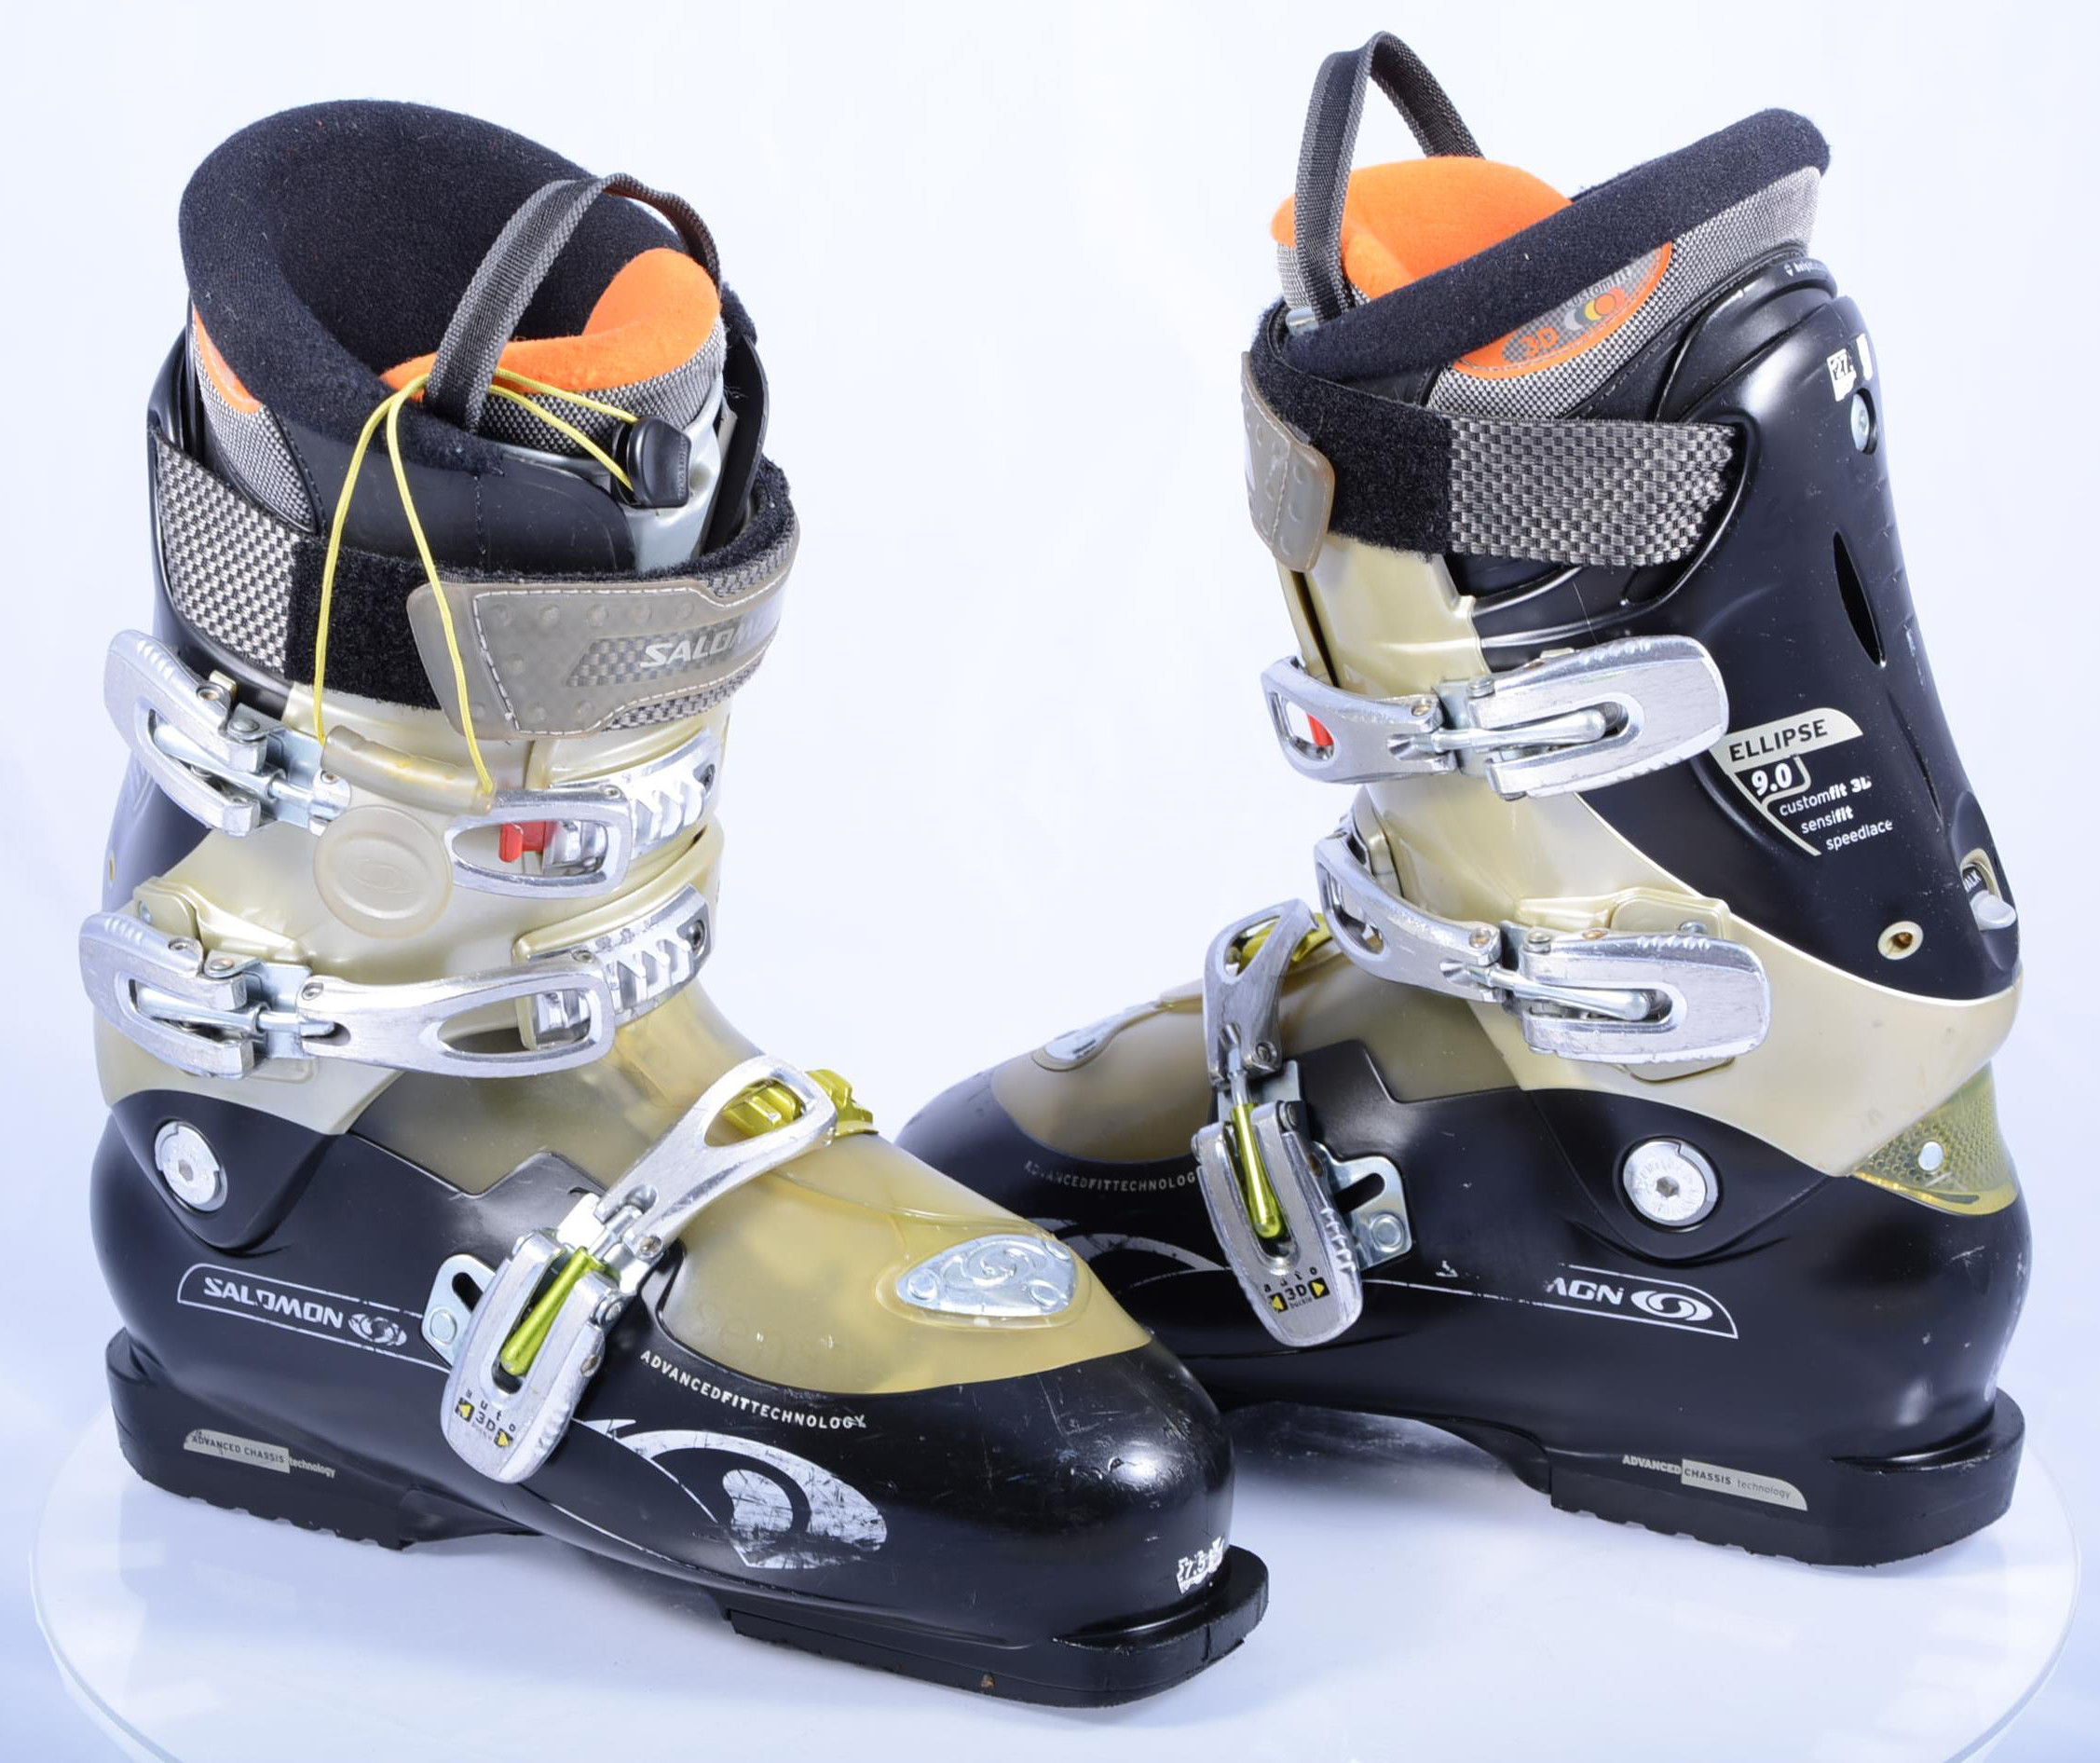 ski boots 9.0, custom fit 3D, SKI/WALK, height adj, BLACK/gold - Mardosport.com